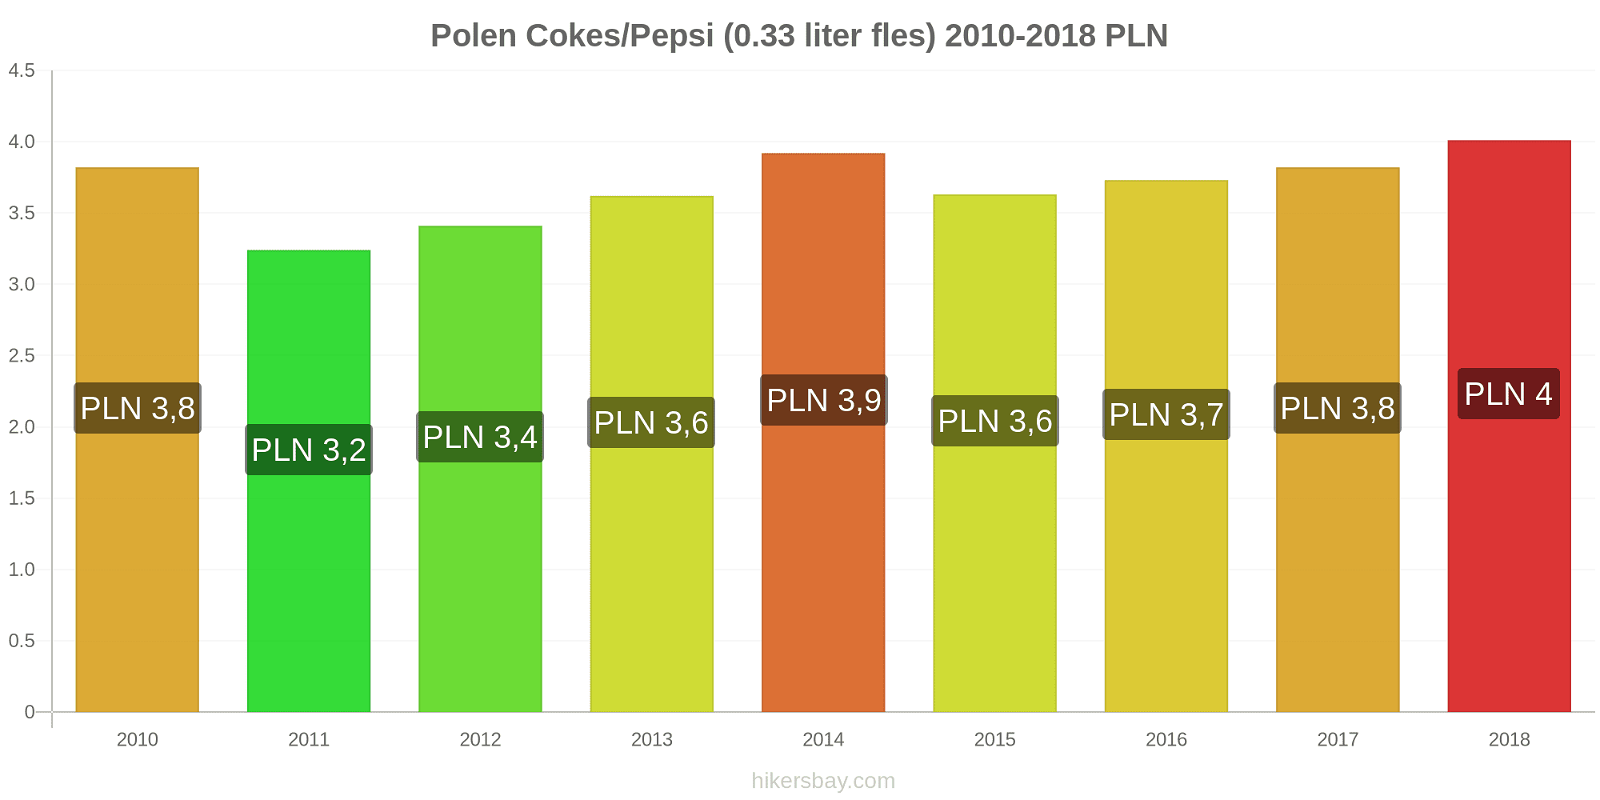 Polen prijswijzigingen Cokes/Pepsi (0,33 literfles) hikersbay.com